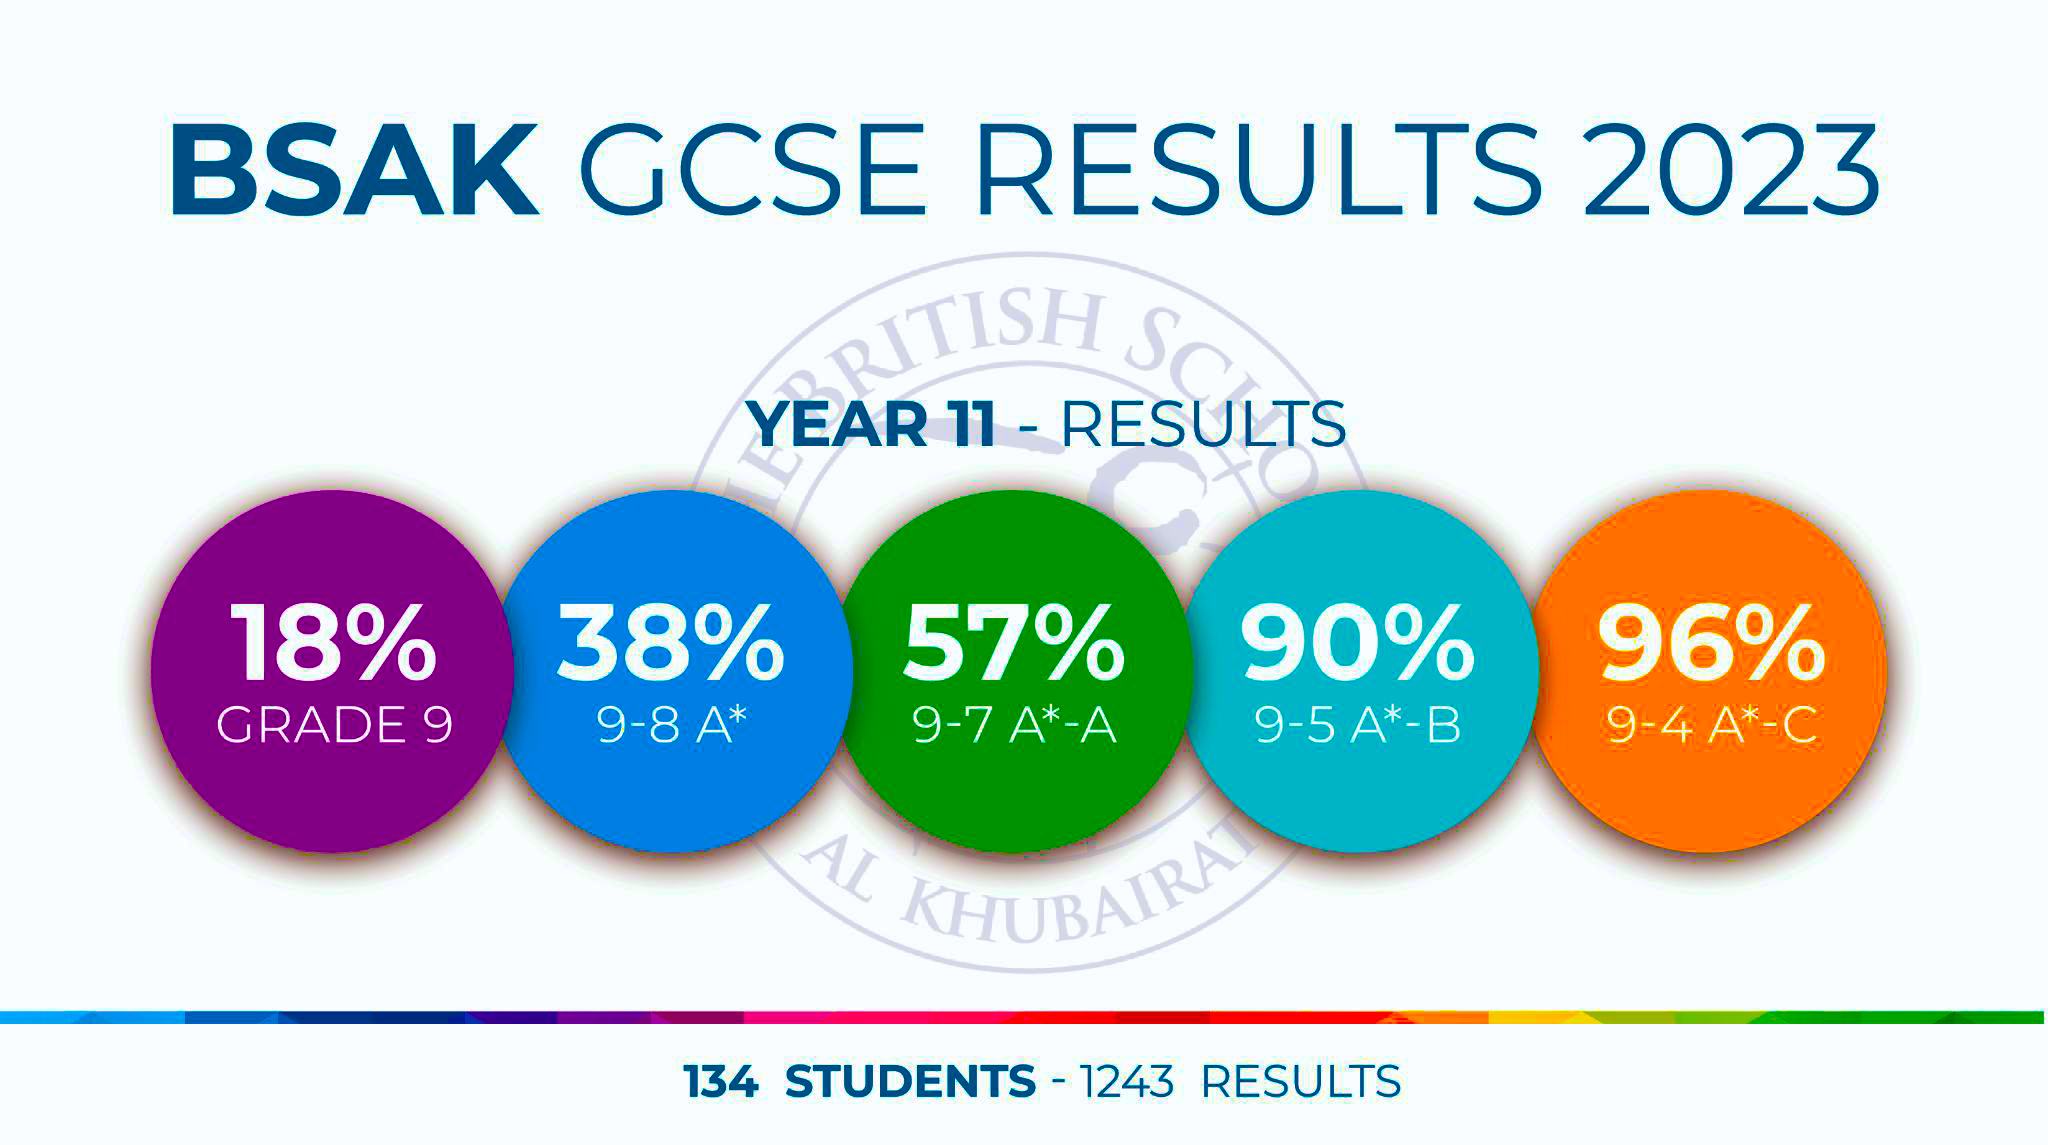 نتائج المدرسة البريطانية الخبيرات GCSE 2023 BSAK